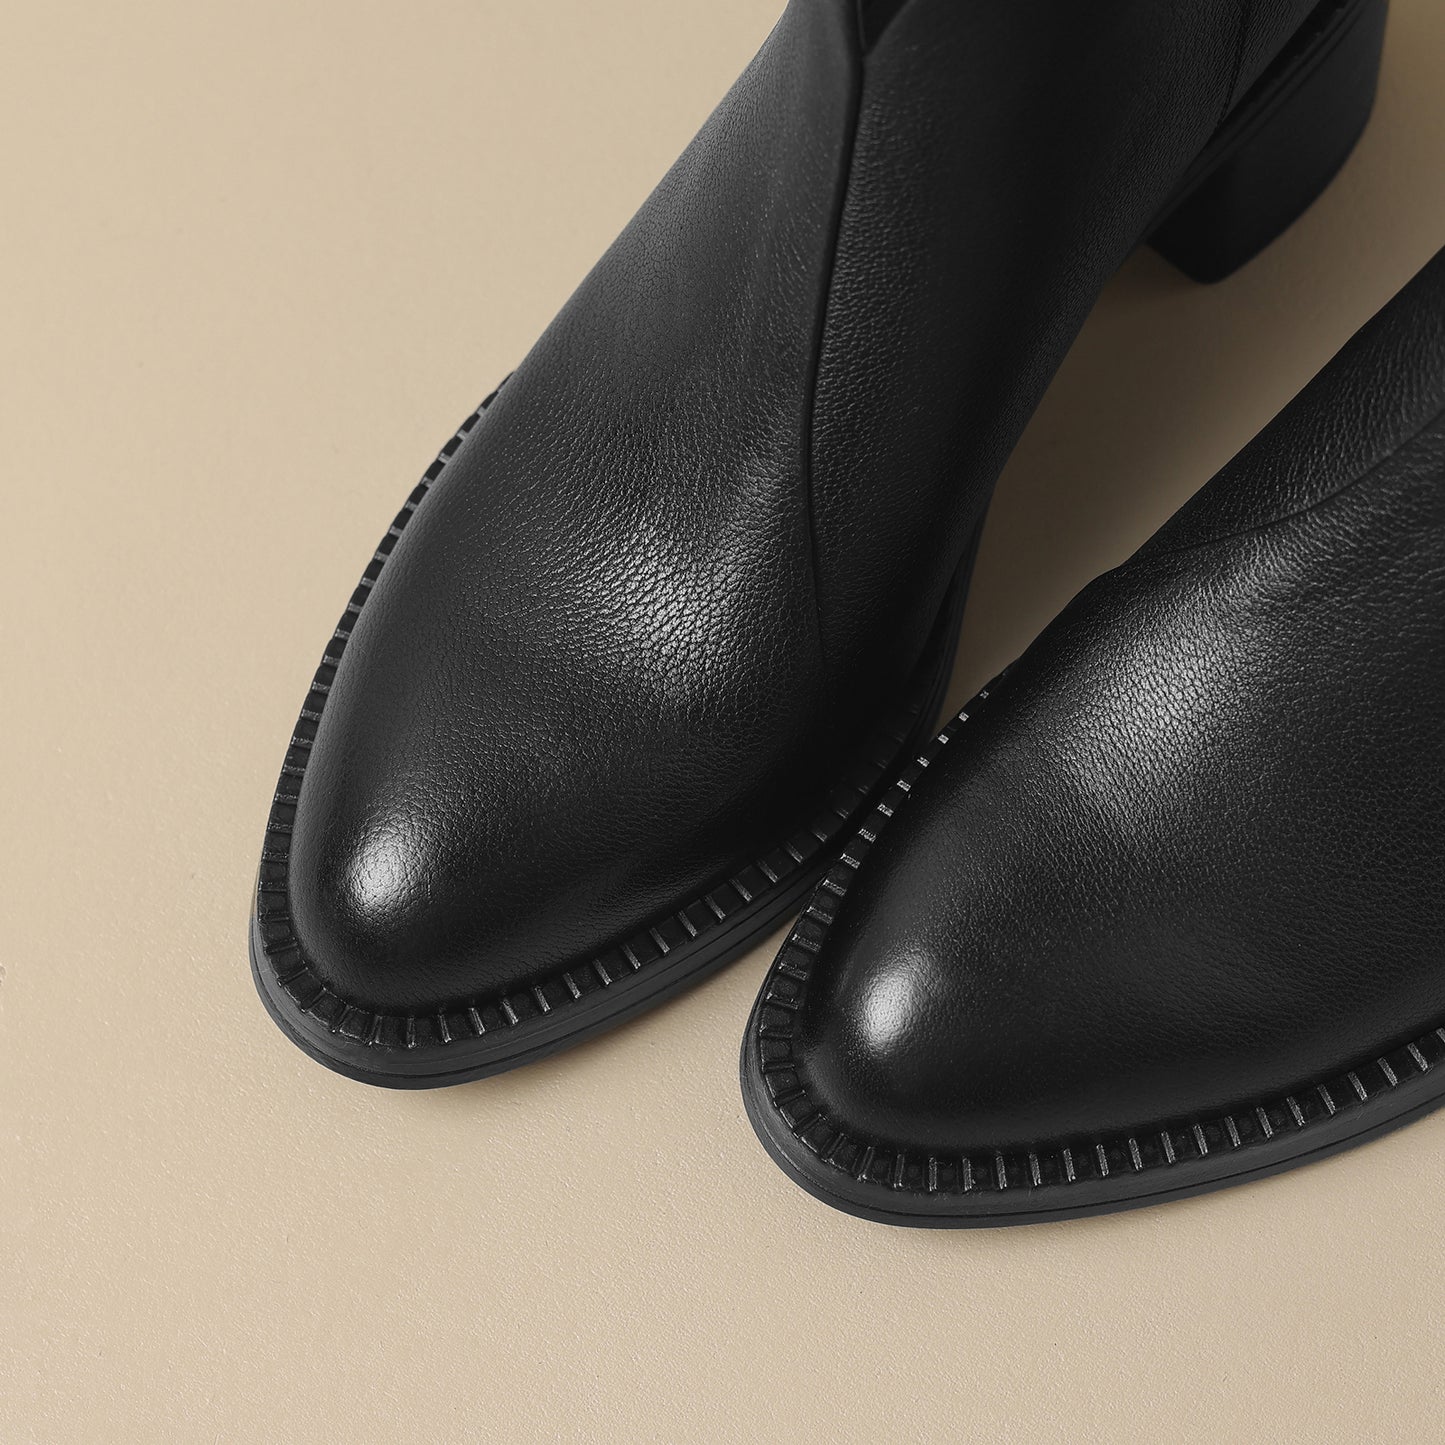 TinaCus Women's Genuine Leather Zip Up Block Heel Handmade Ankle Boots